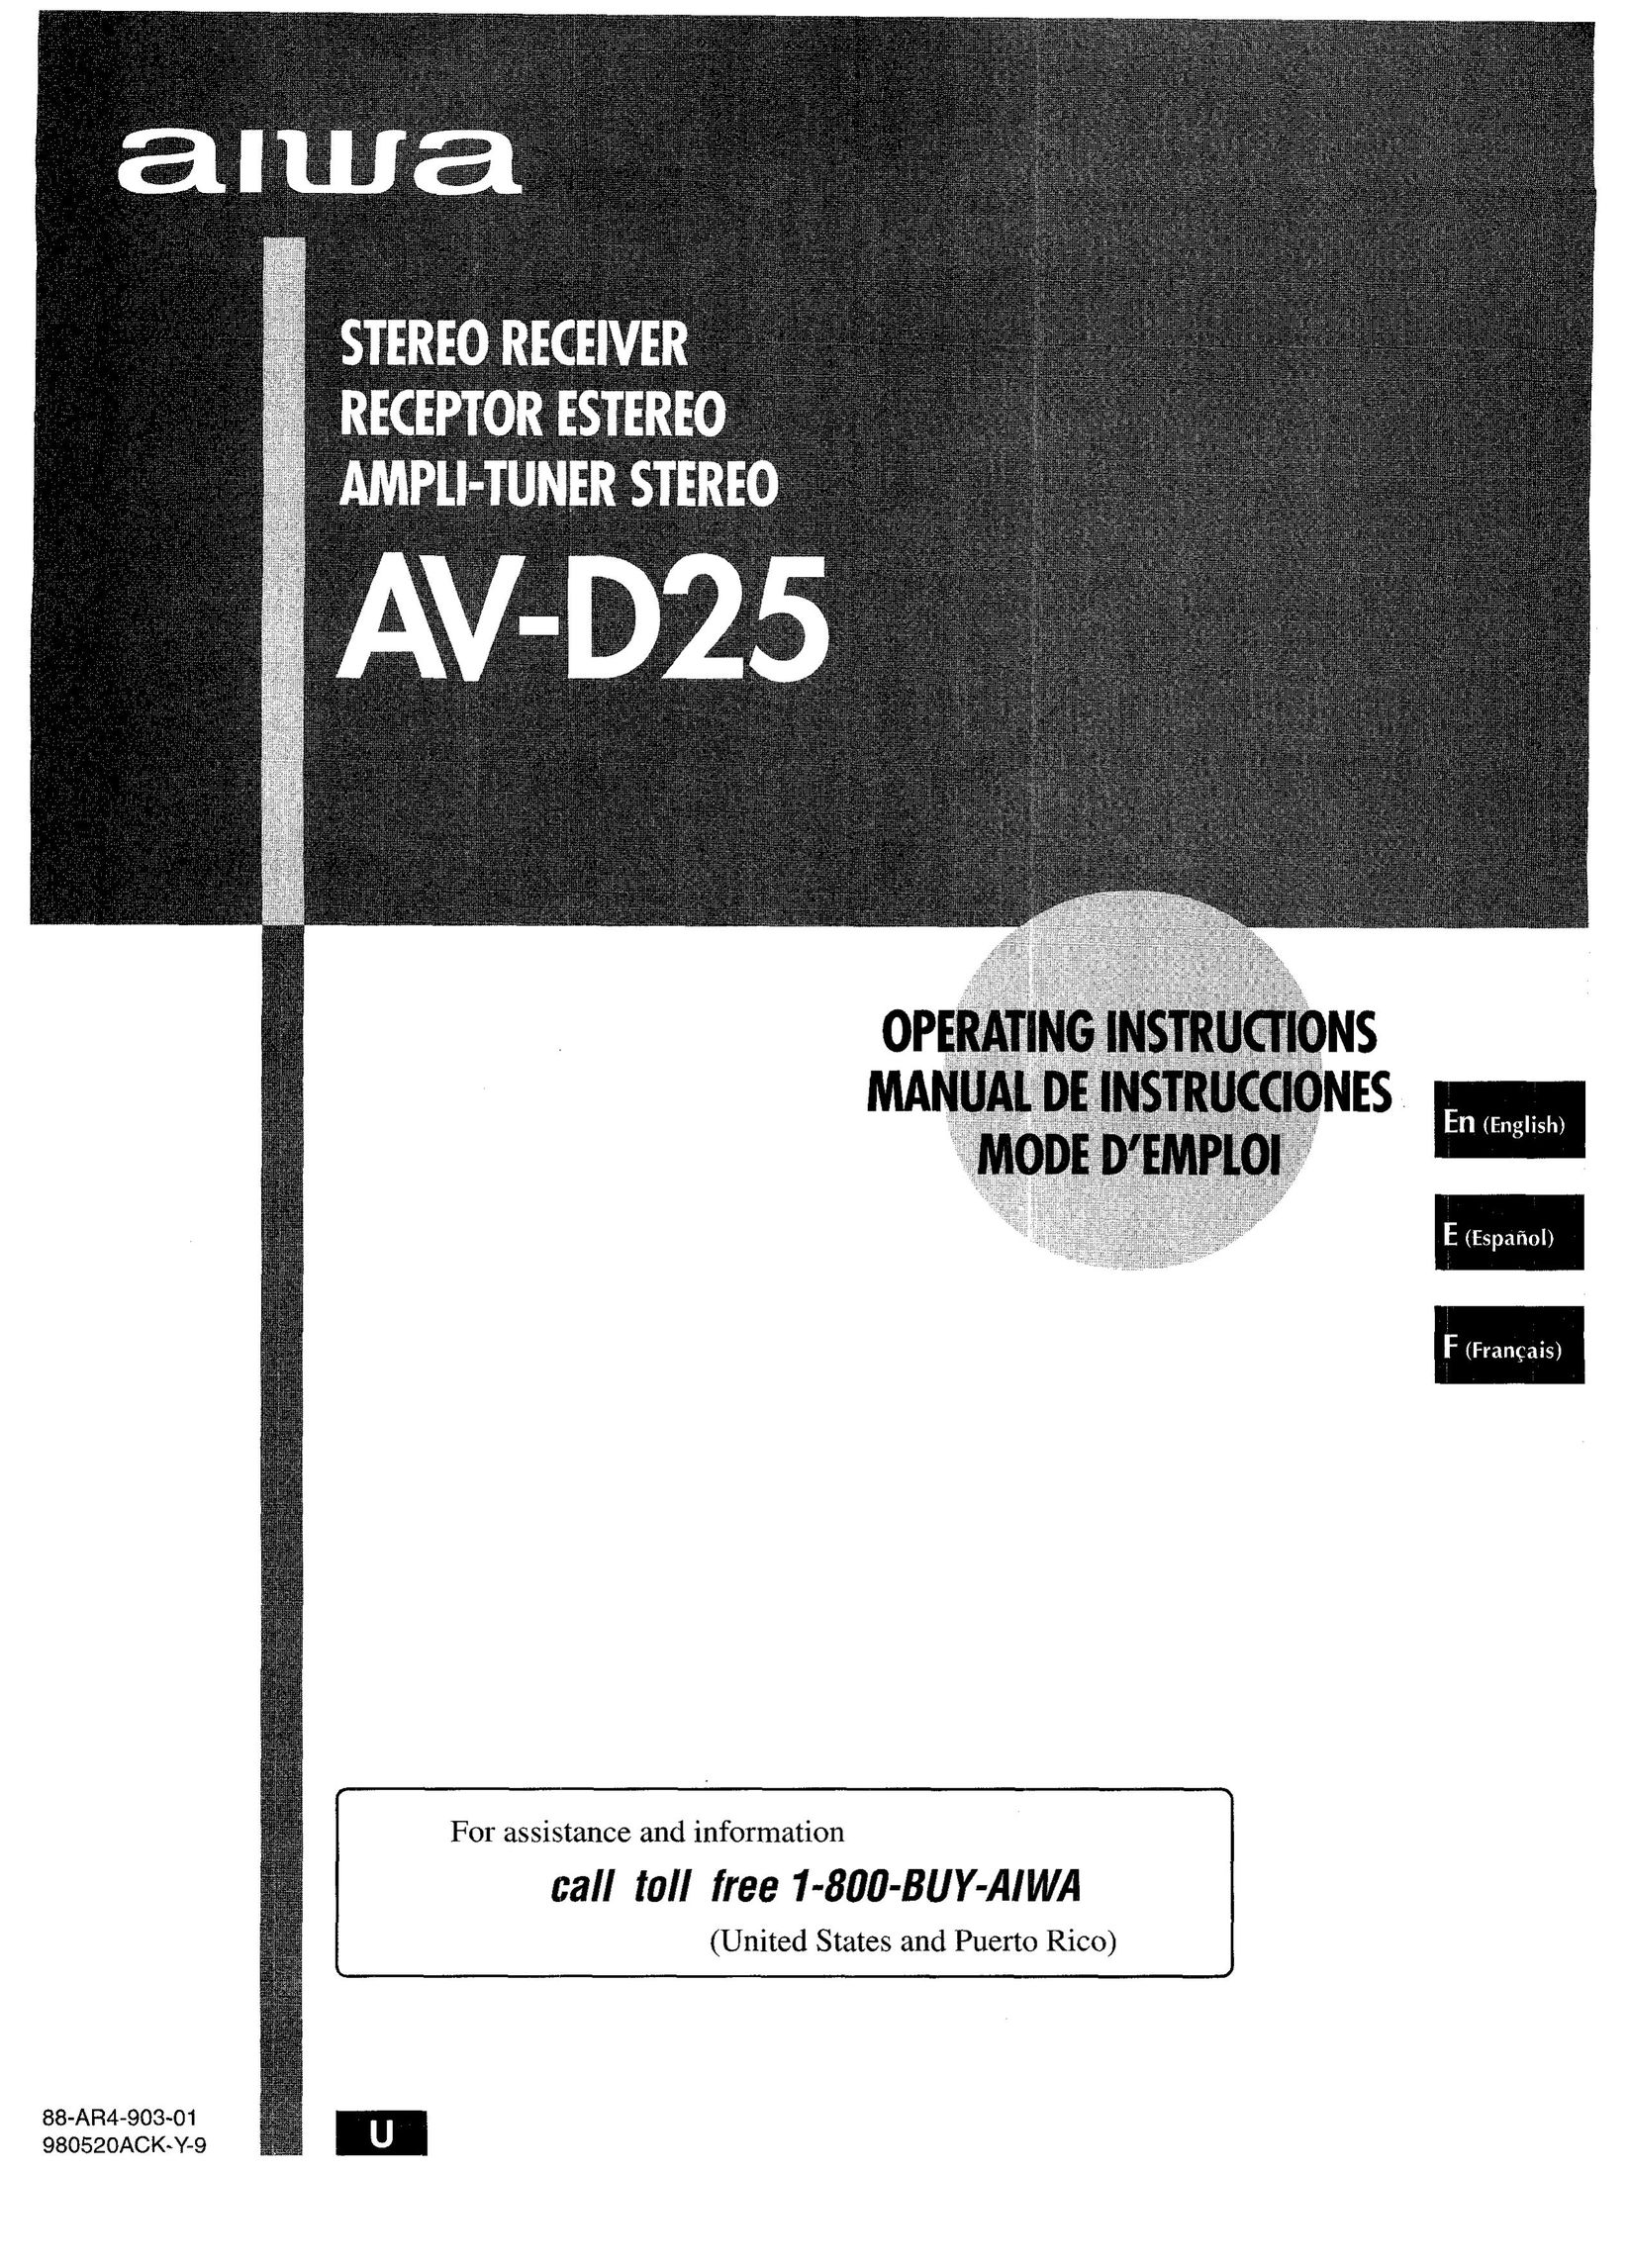 Aiwa AV-D25 Stereo Receiver User Manual